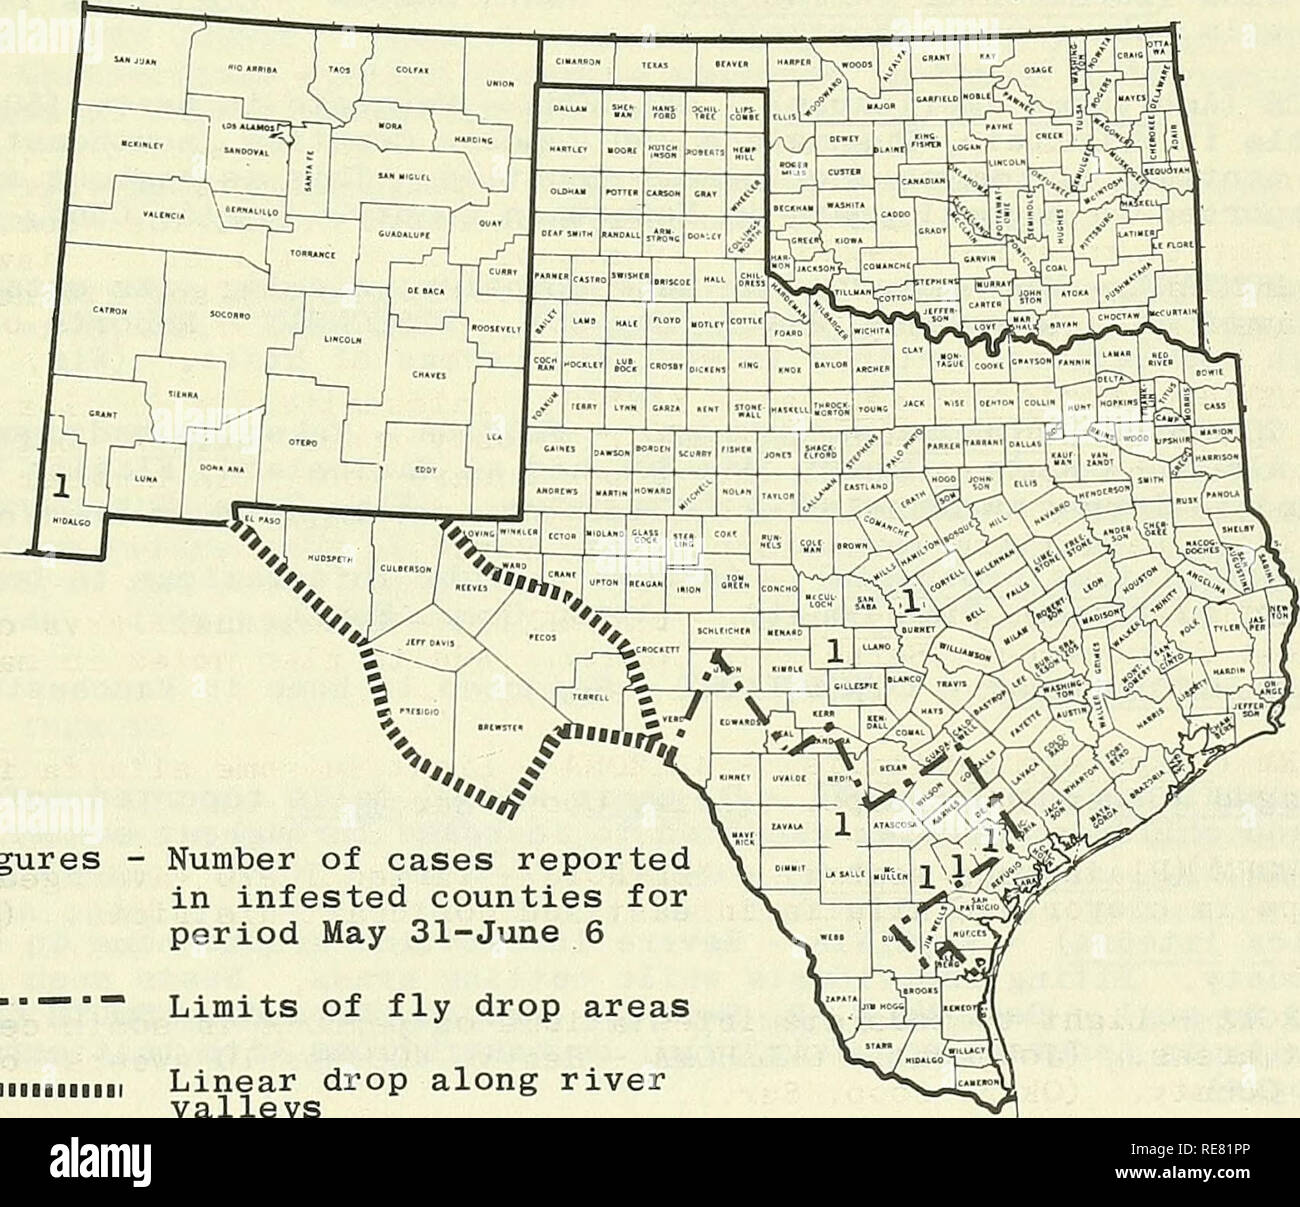 . Kooperative Wirtschaftsbeziehungen insekt Bericht. Nützlinge und Schädlinge. - 625 - STATUS DER SCHRAUBE-WORM (Cochliomyia hominivorax) IM SÜDWESTEN im Zeitraum 31. Mai bis 6. Juni die erste Schraube-worm-Fall seit Dezember 2, 1963, berichtet von Hidalgo County, New Mexico. Cochise County, Arizona, angrenzende Hidalgo County, New Mexico, berichtet 7 Schraube-worm-Fällen. Santa Cruz County, Arizona, berichteten auch über eine Schraube-worm-Fall. Sechs bestätigte Fälle wurden in dieser Zeit in Texas bekannt gegeben. Lampasas und Mason Grafschaften sind die 2 nördlichsten Fällen. Frio, Live Oak, Biene und Goliad Grafschaften auch Repo Stockfoto